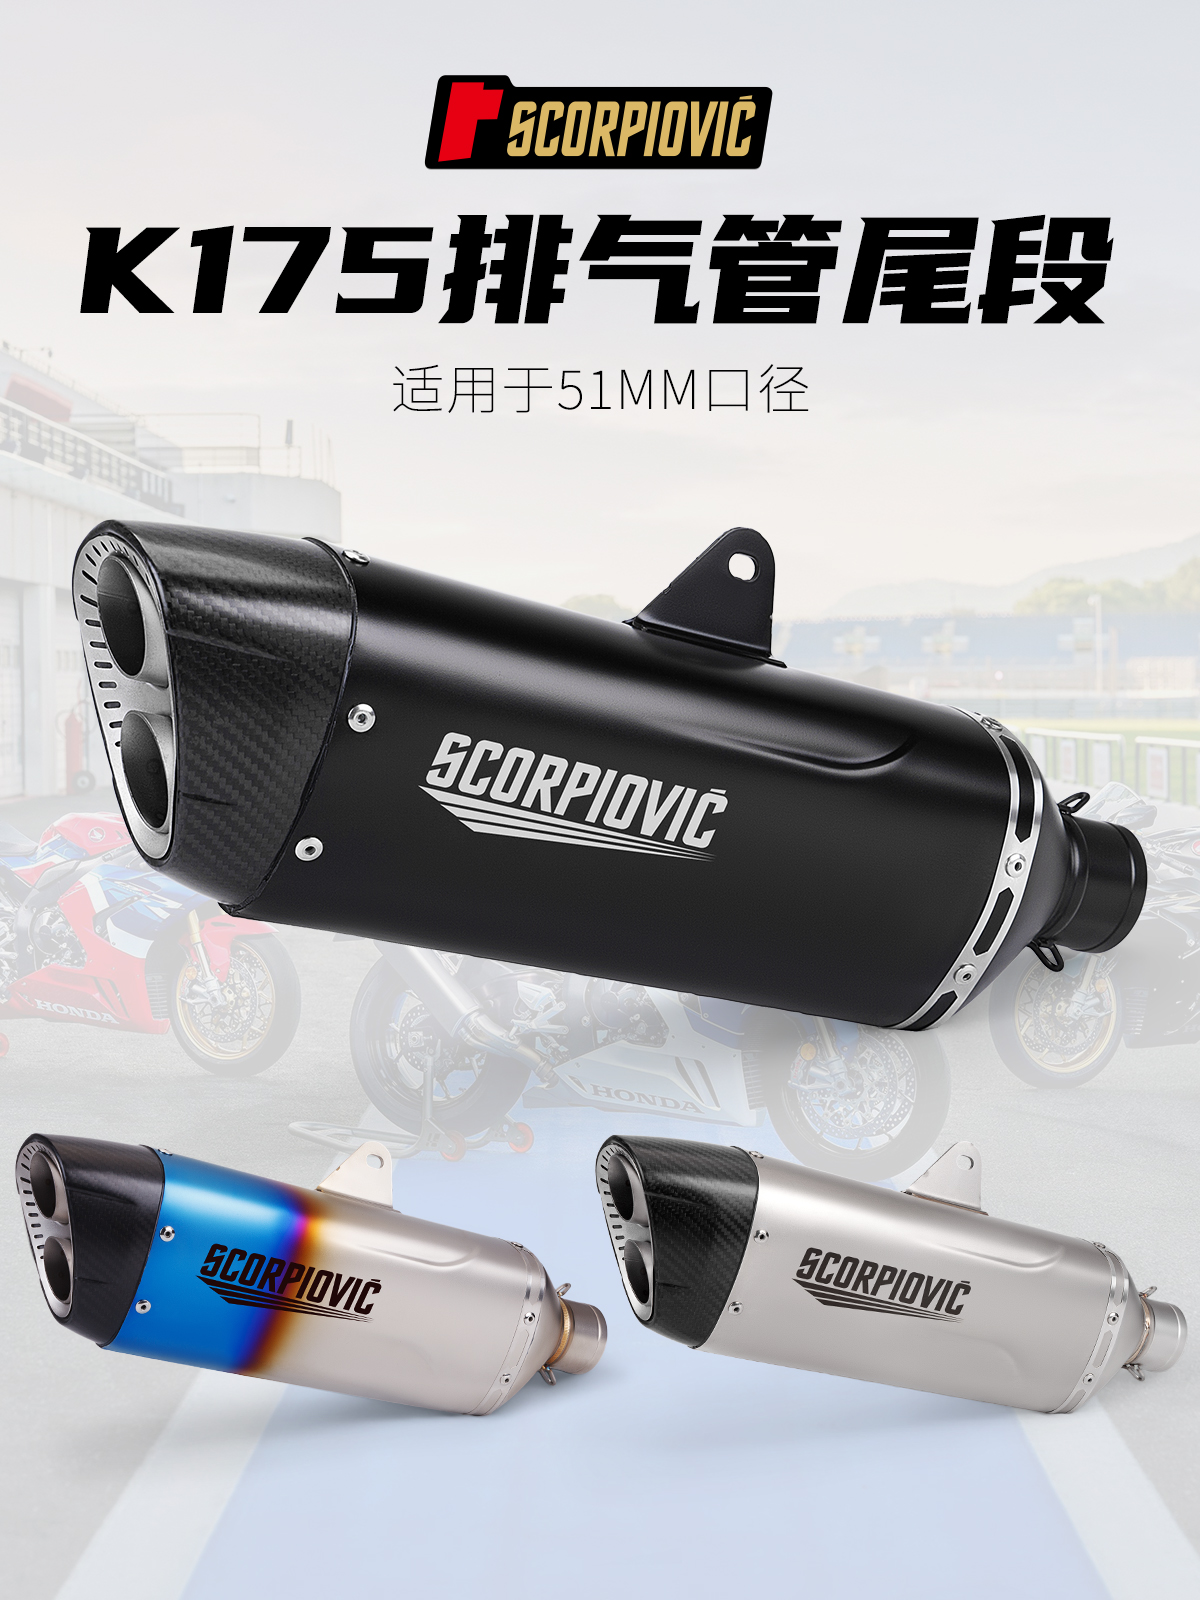 适用摩托车MT09 MT07 R3排气管改装K175不锈钢双孔 51mm通用尾段